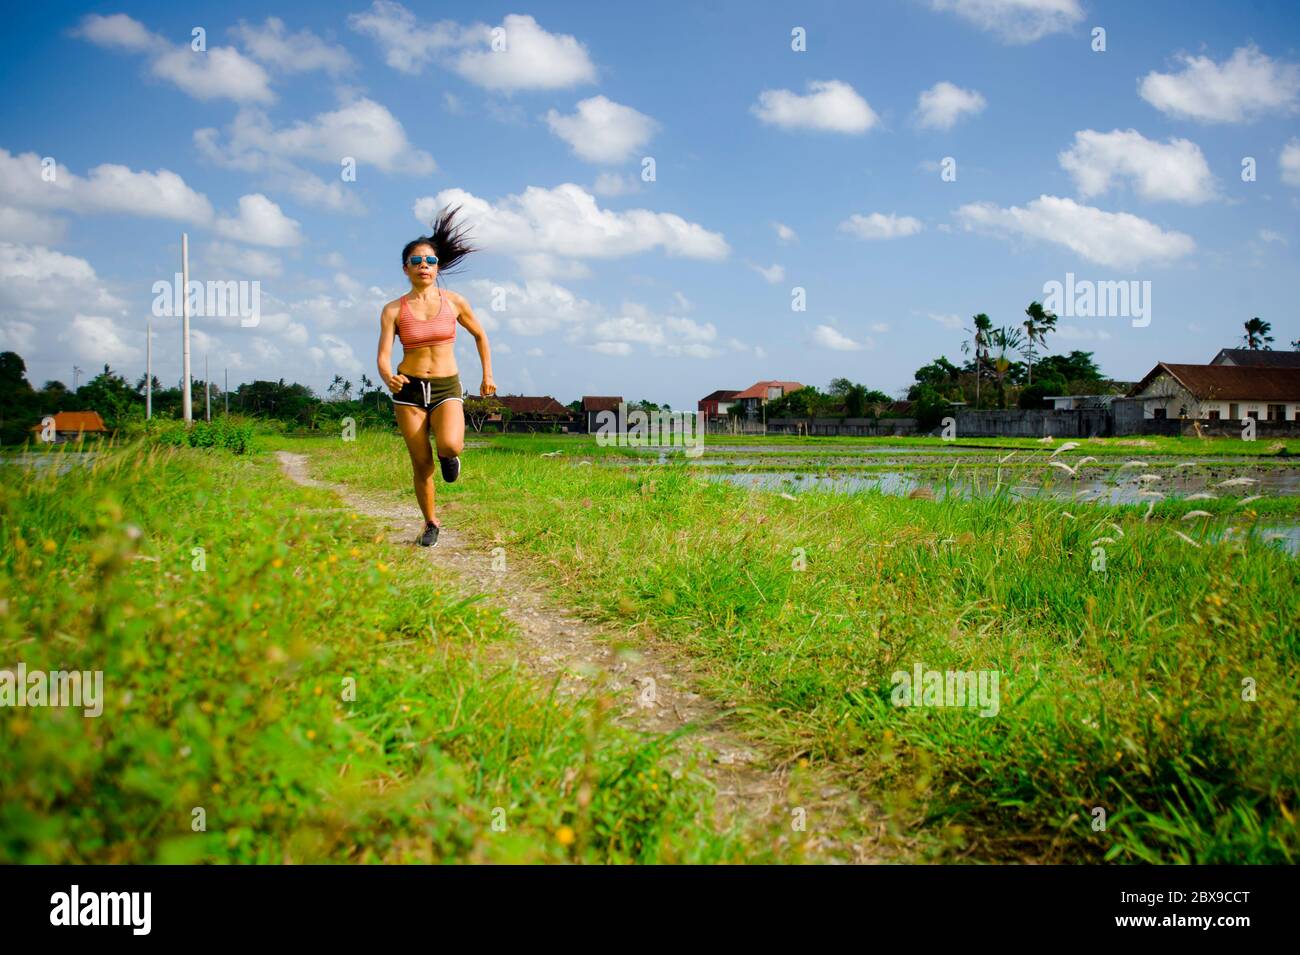 Attrayant et très en forme asiatique sport femme entraînement entraînement entraînement à la course à pied sur le terrain vert paysage arrière-plan travailler dur dans un style de vie sain et la compétition Banque D'Images